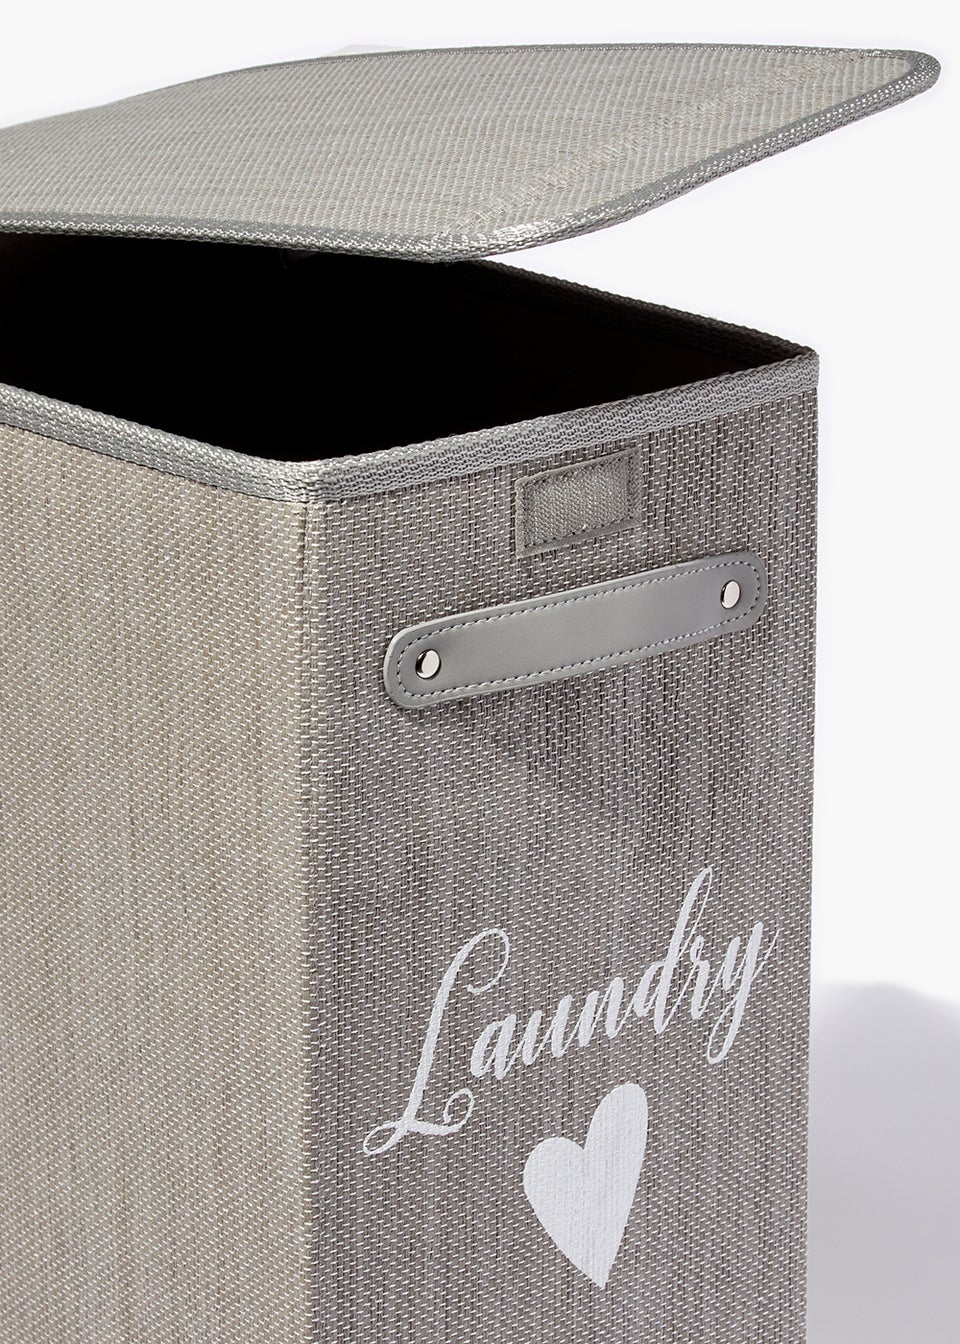 Grey Narrow Laundry Basket (40cm x 21cm x 60cm)